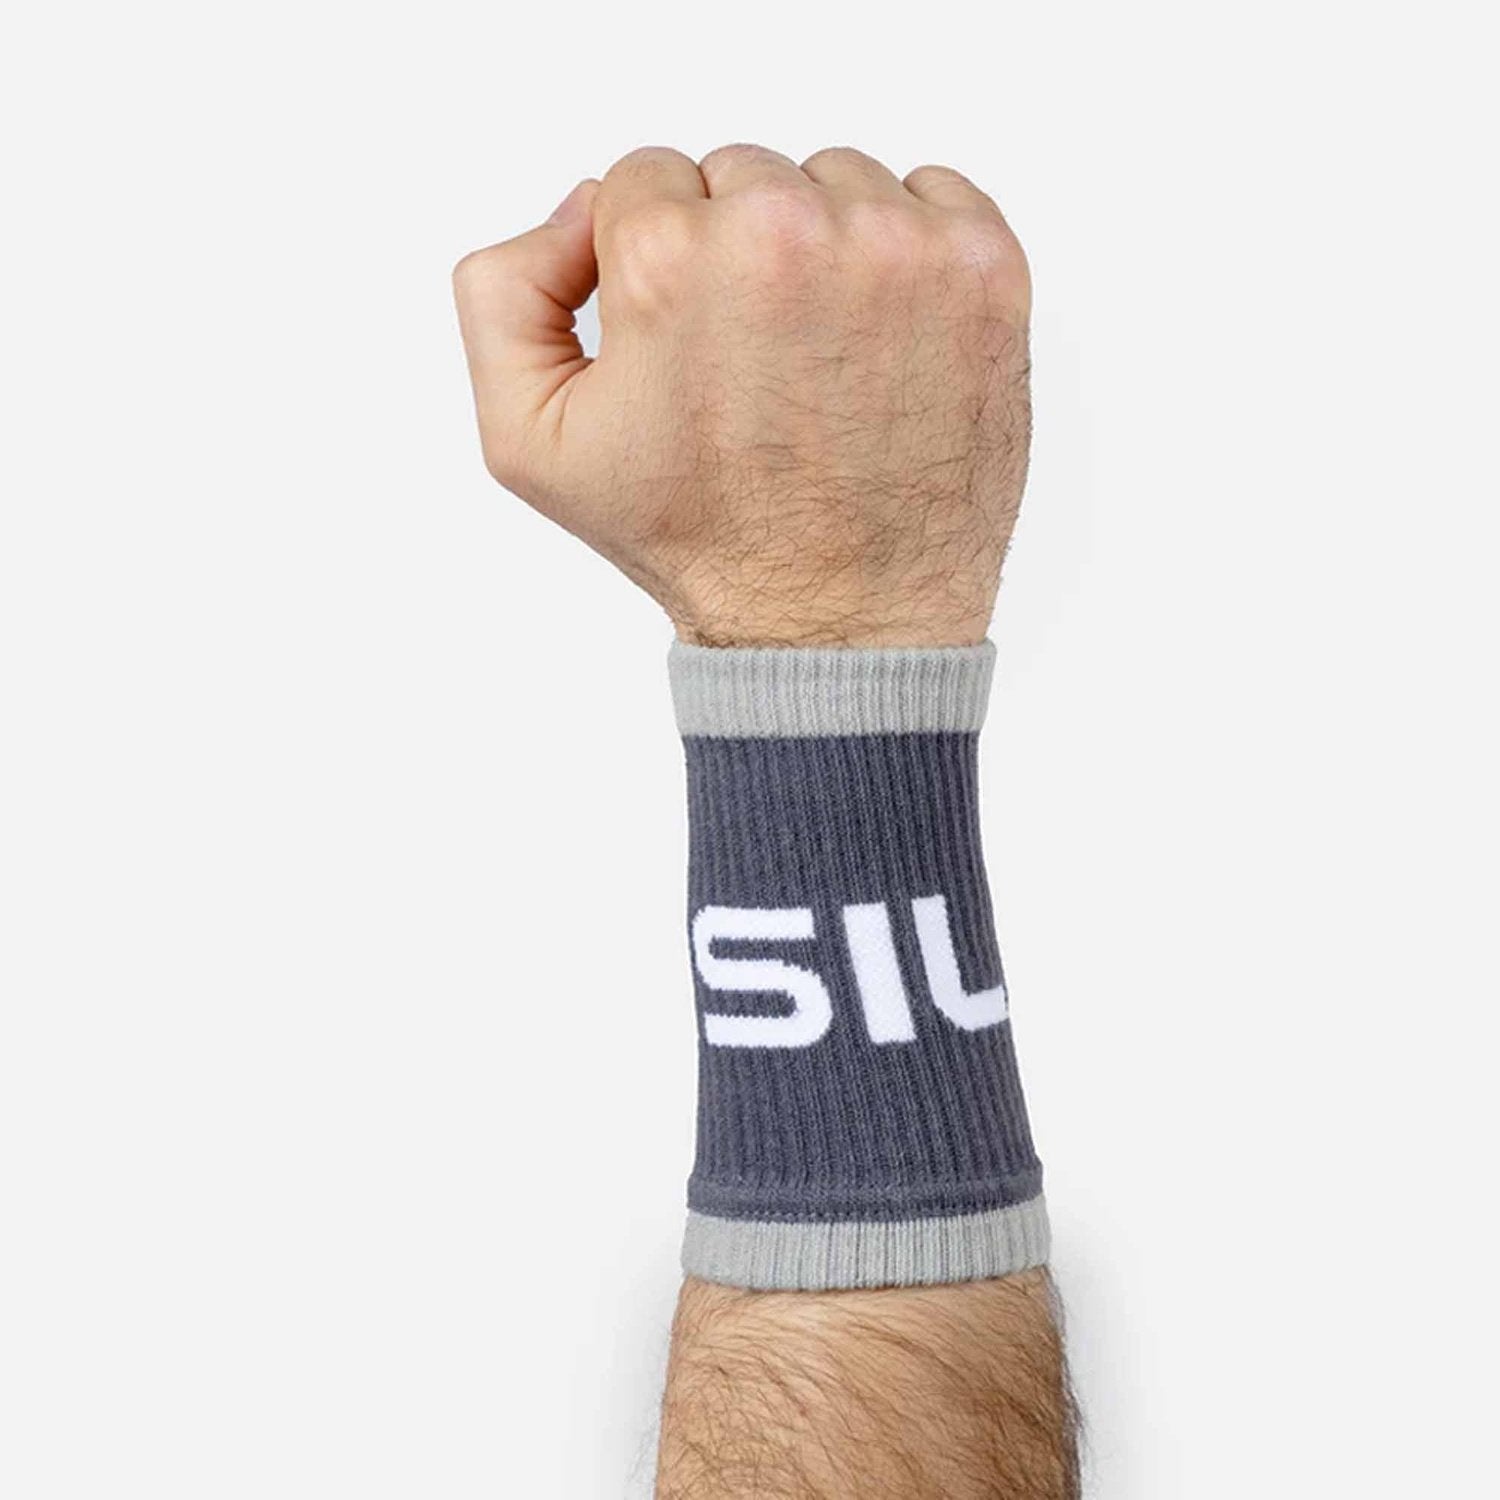 PicSil Wrist Bands (Schweissbänder) Grau kaufen bei HighPowered.ch